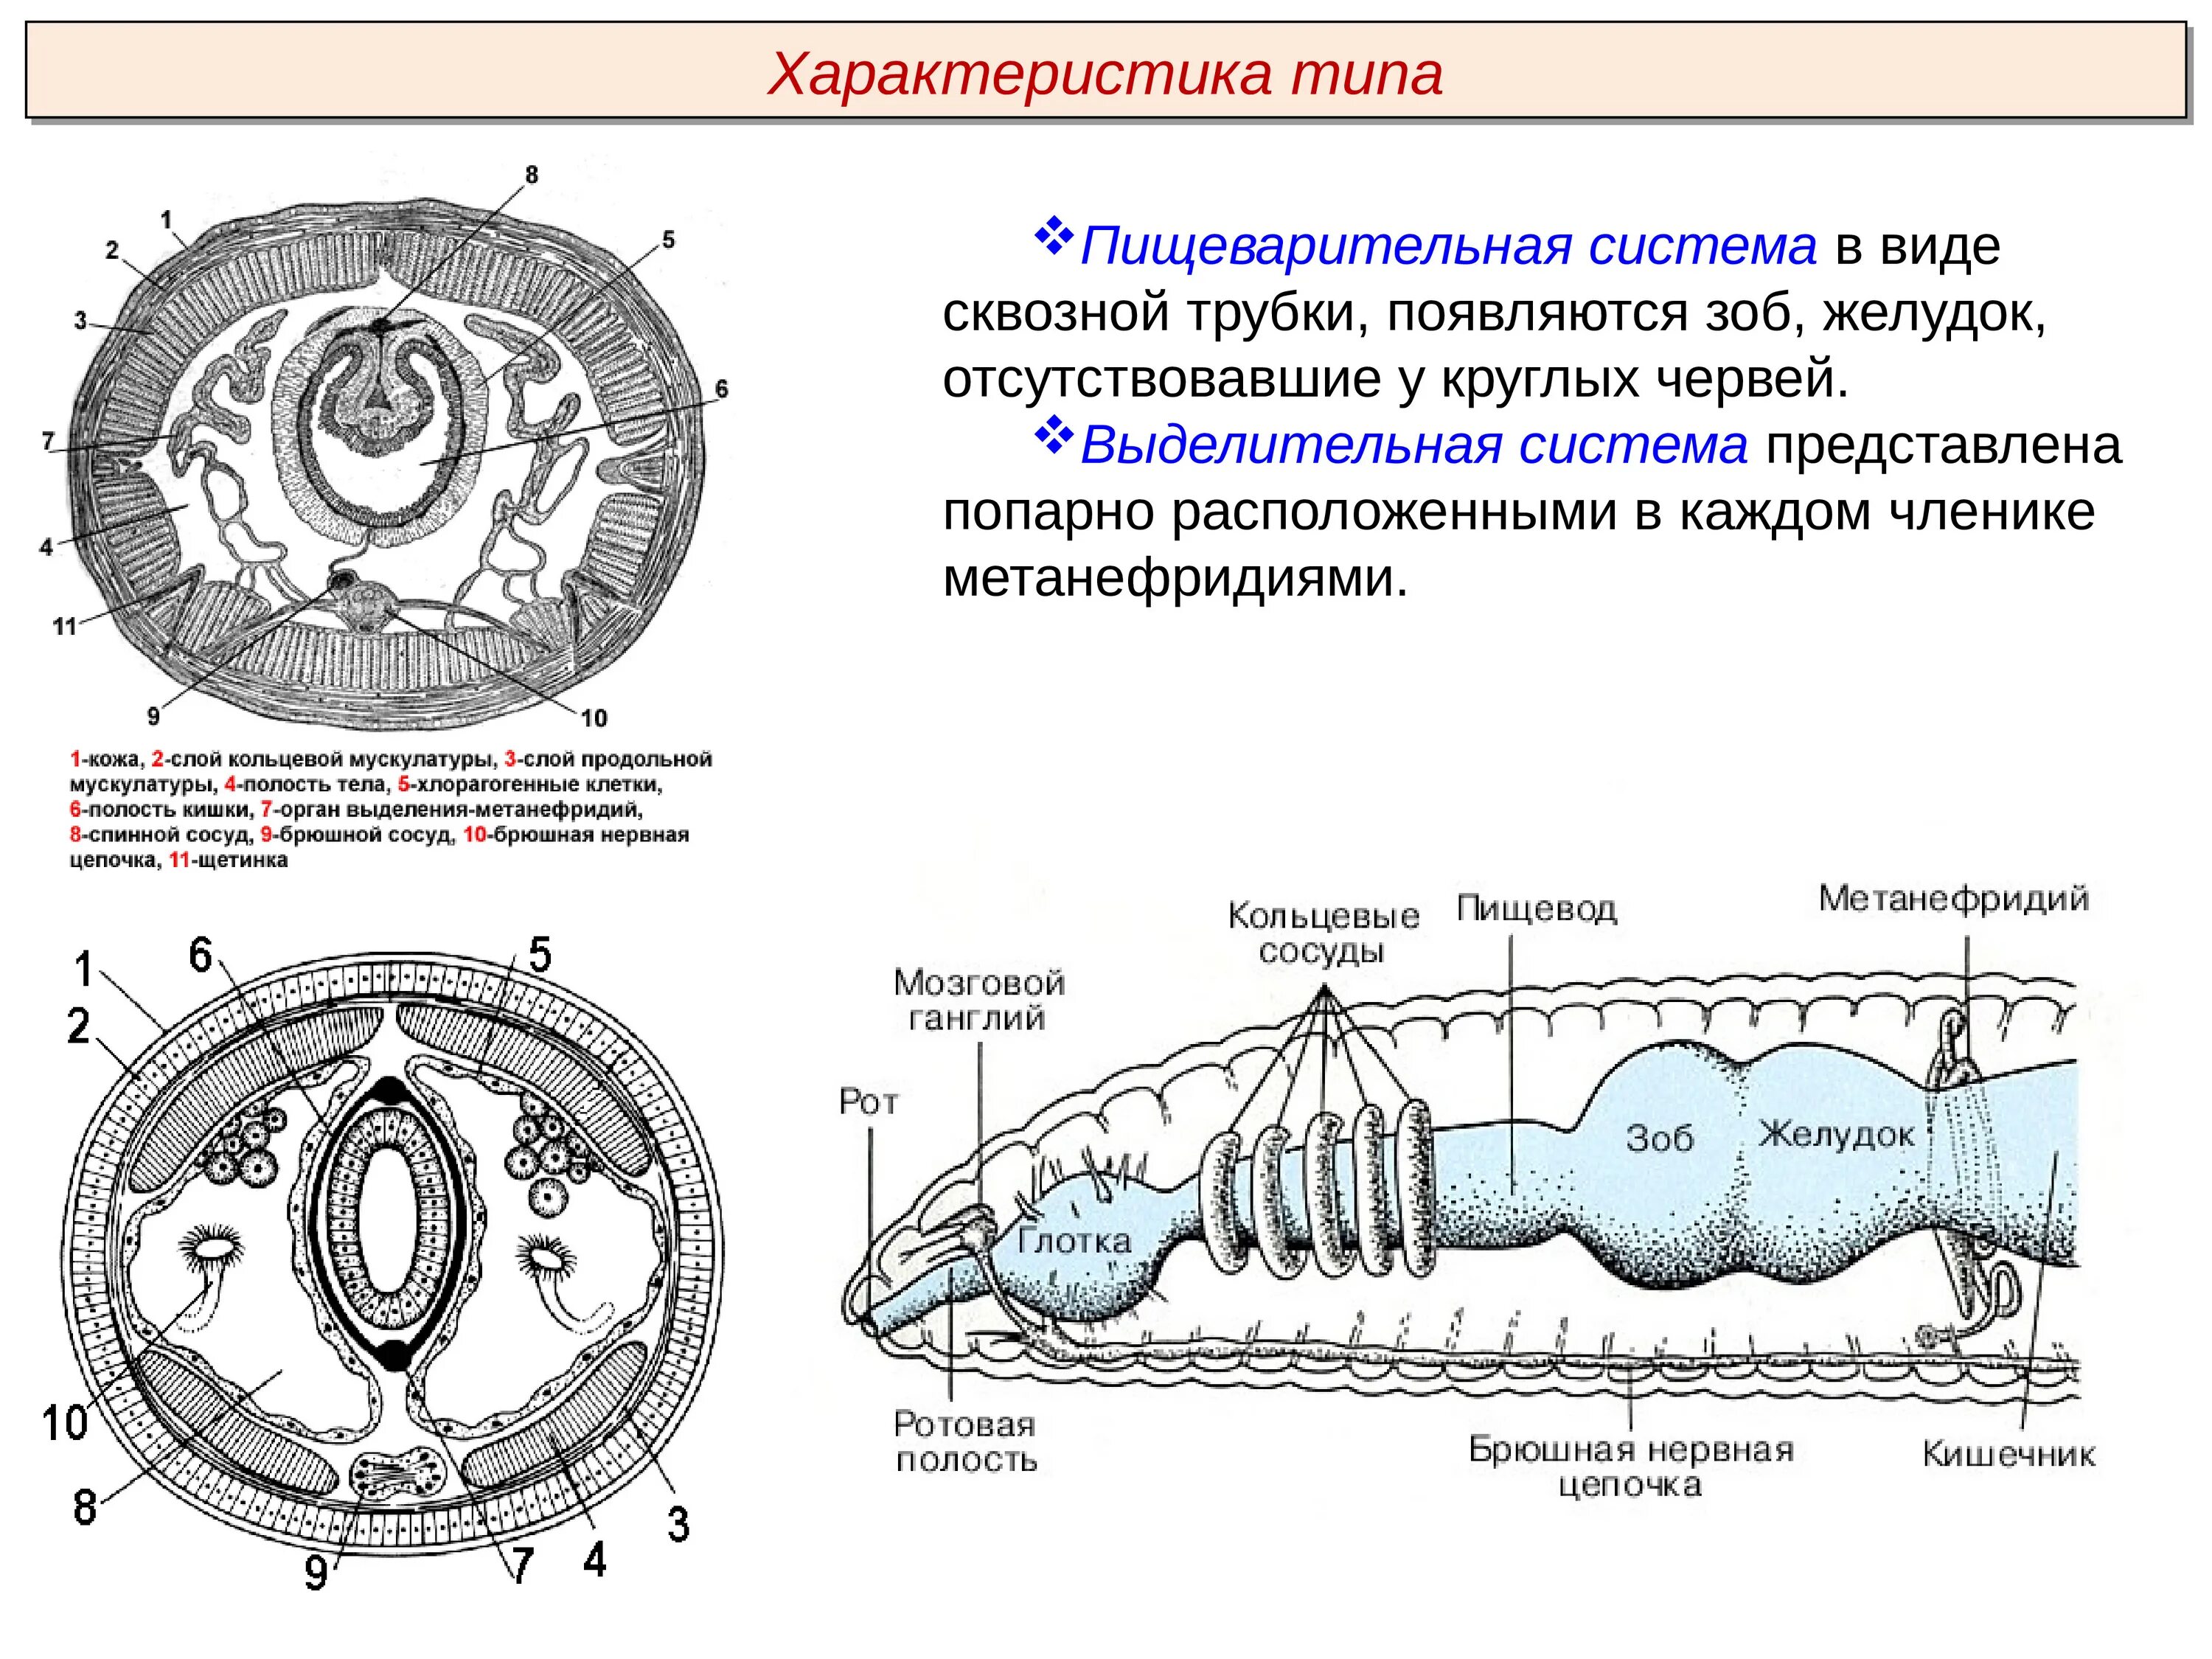 Органы выделительной системы червя. Тип кольчатые черви строение выделительной системы. Тип выделительной системы кольчатых червей. Органы выделительной системы кольчатых червей. Выделительная система кольчатых червей.